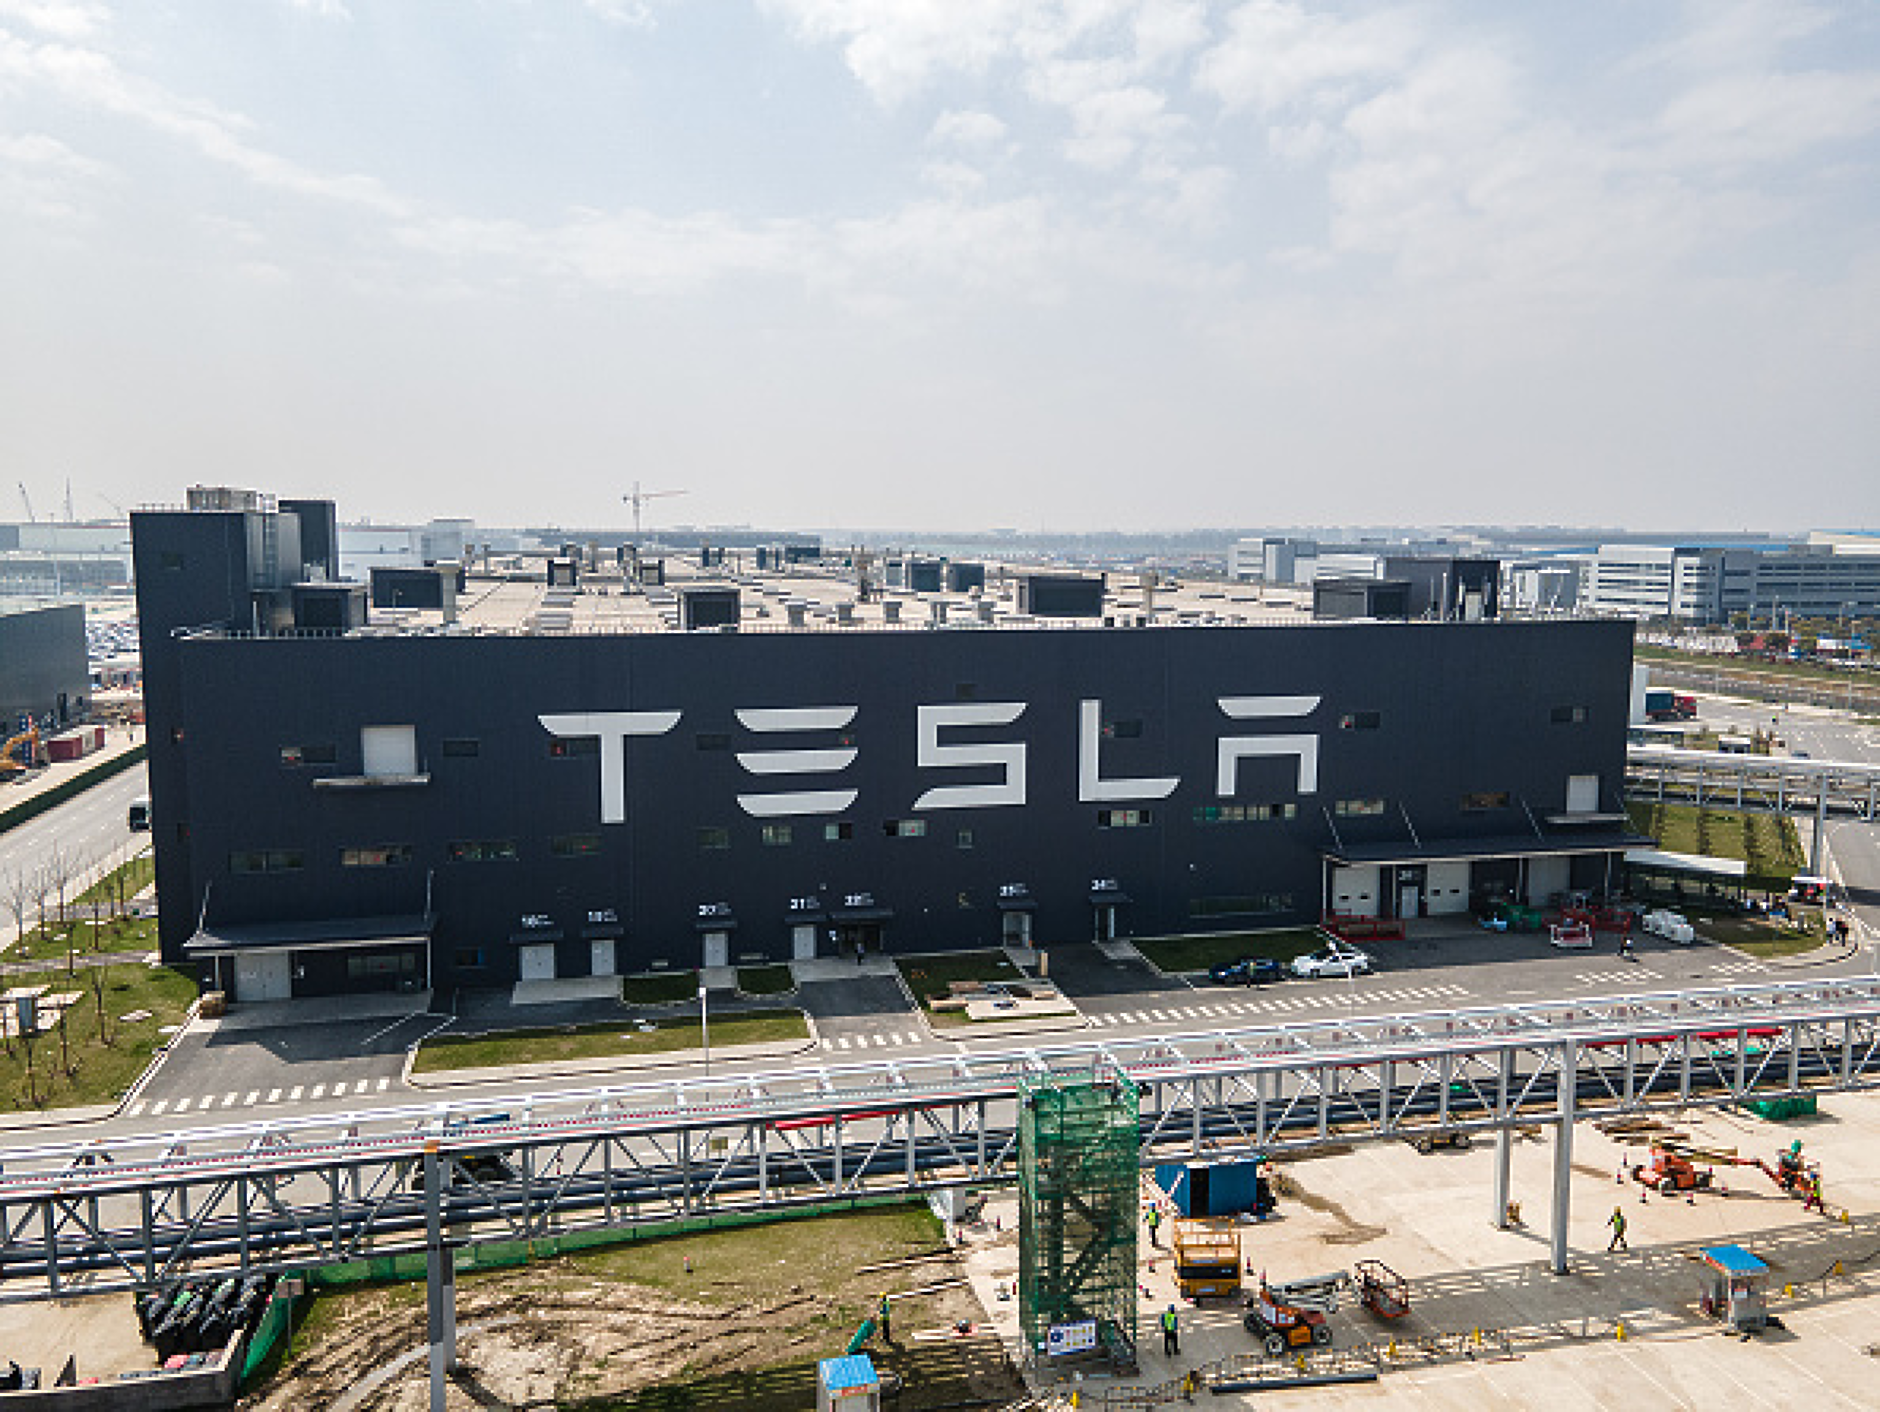 Tesla купува в Индия компоненти за електрически коли за 1,9 млрд. долара 